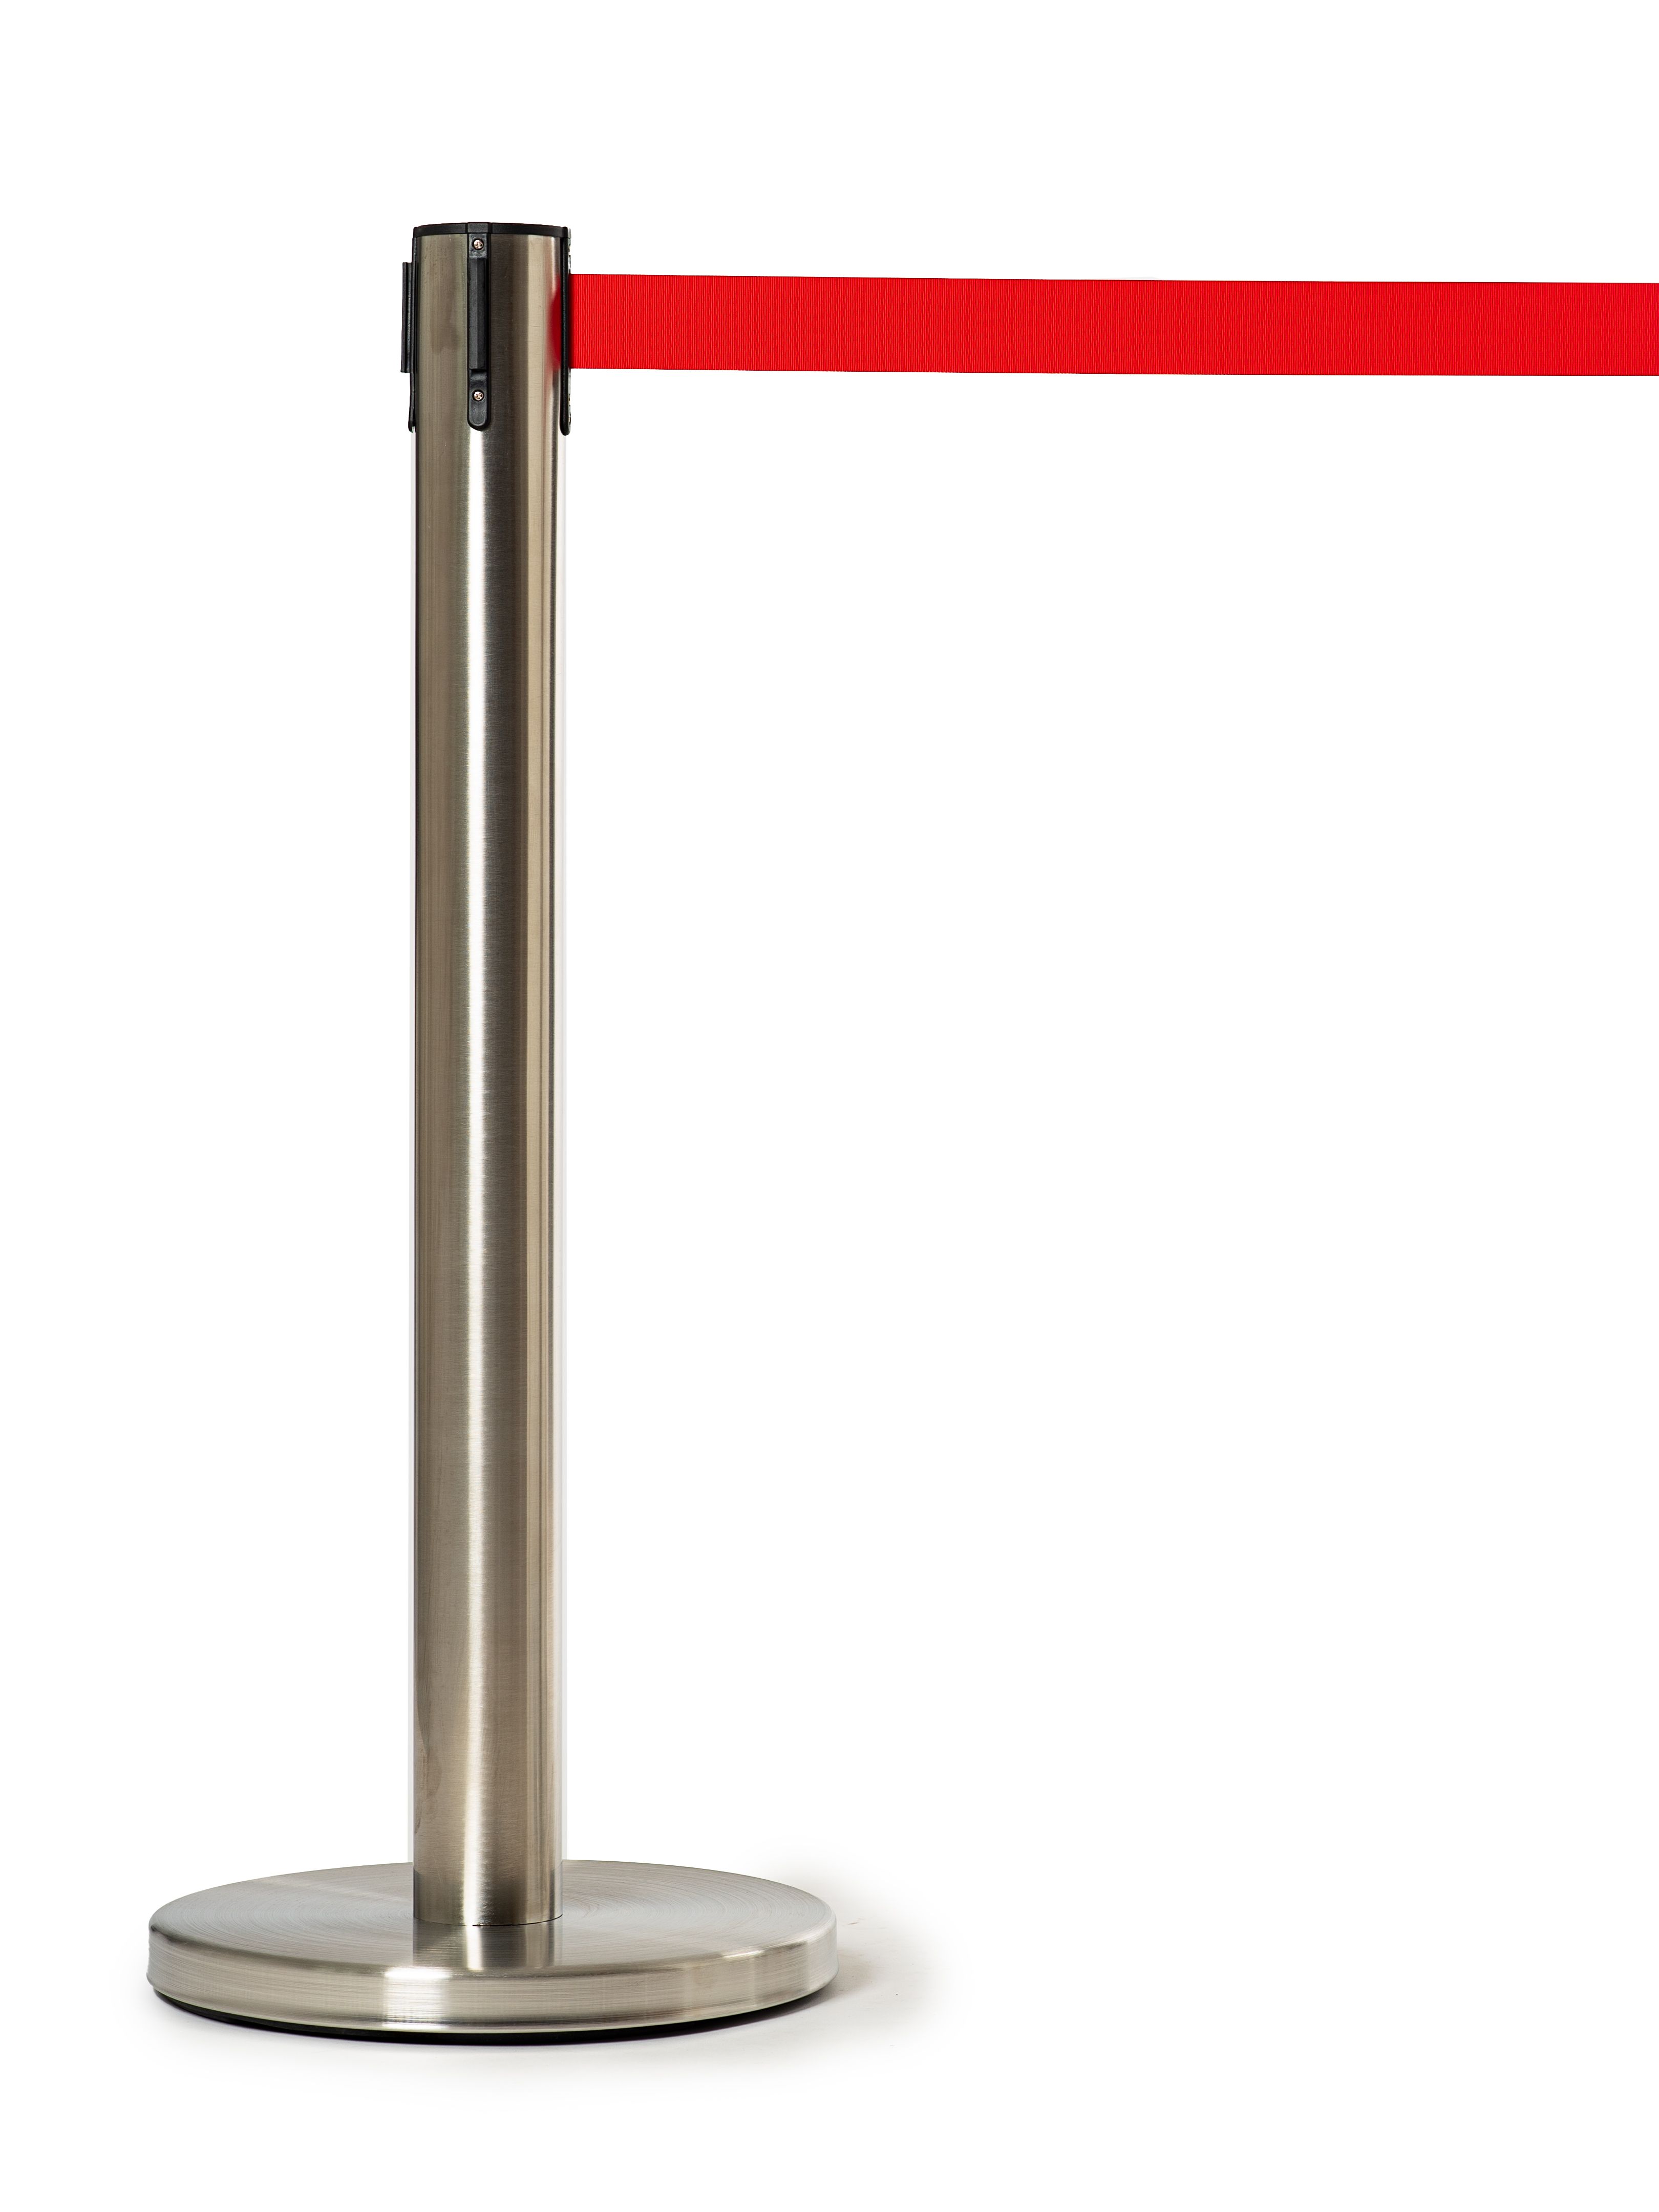 мобильная стойка с красной лентой 5 метров ип кузин р с Мобильная стойка с красной лентой 5 метров